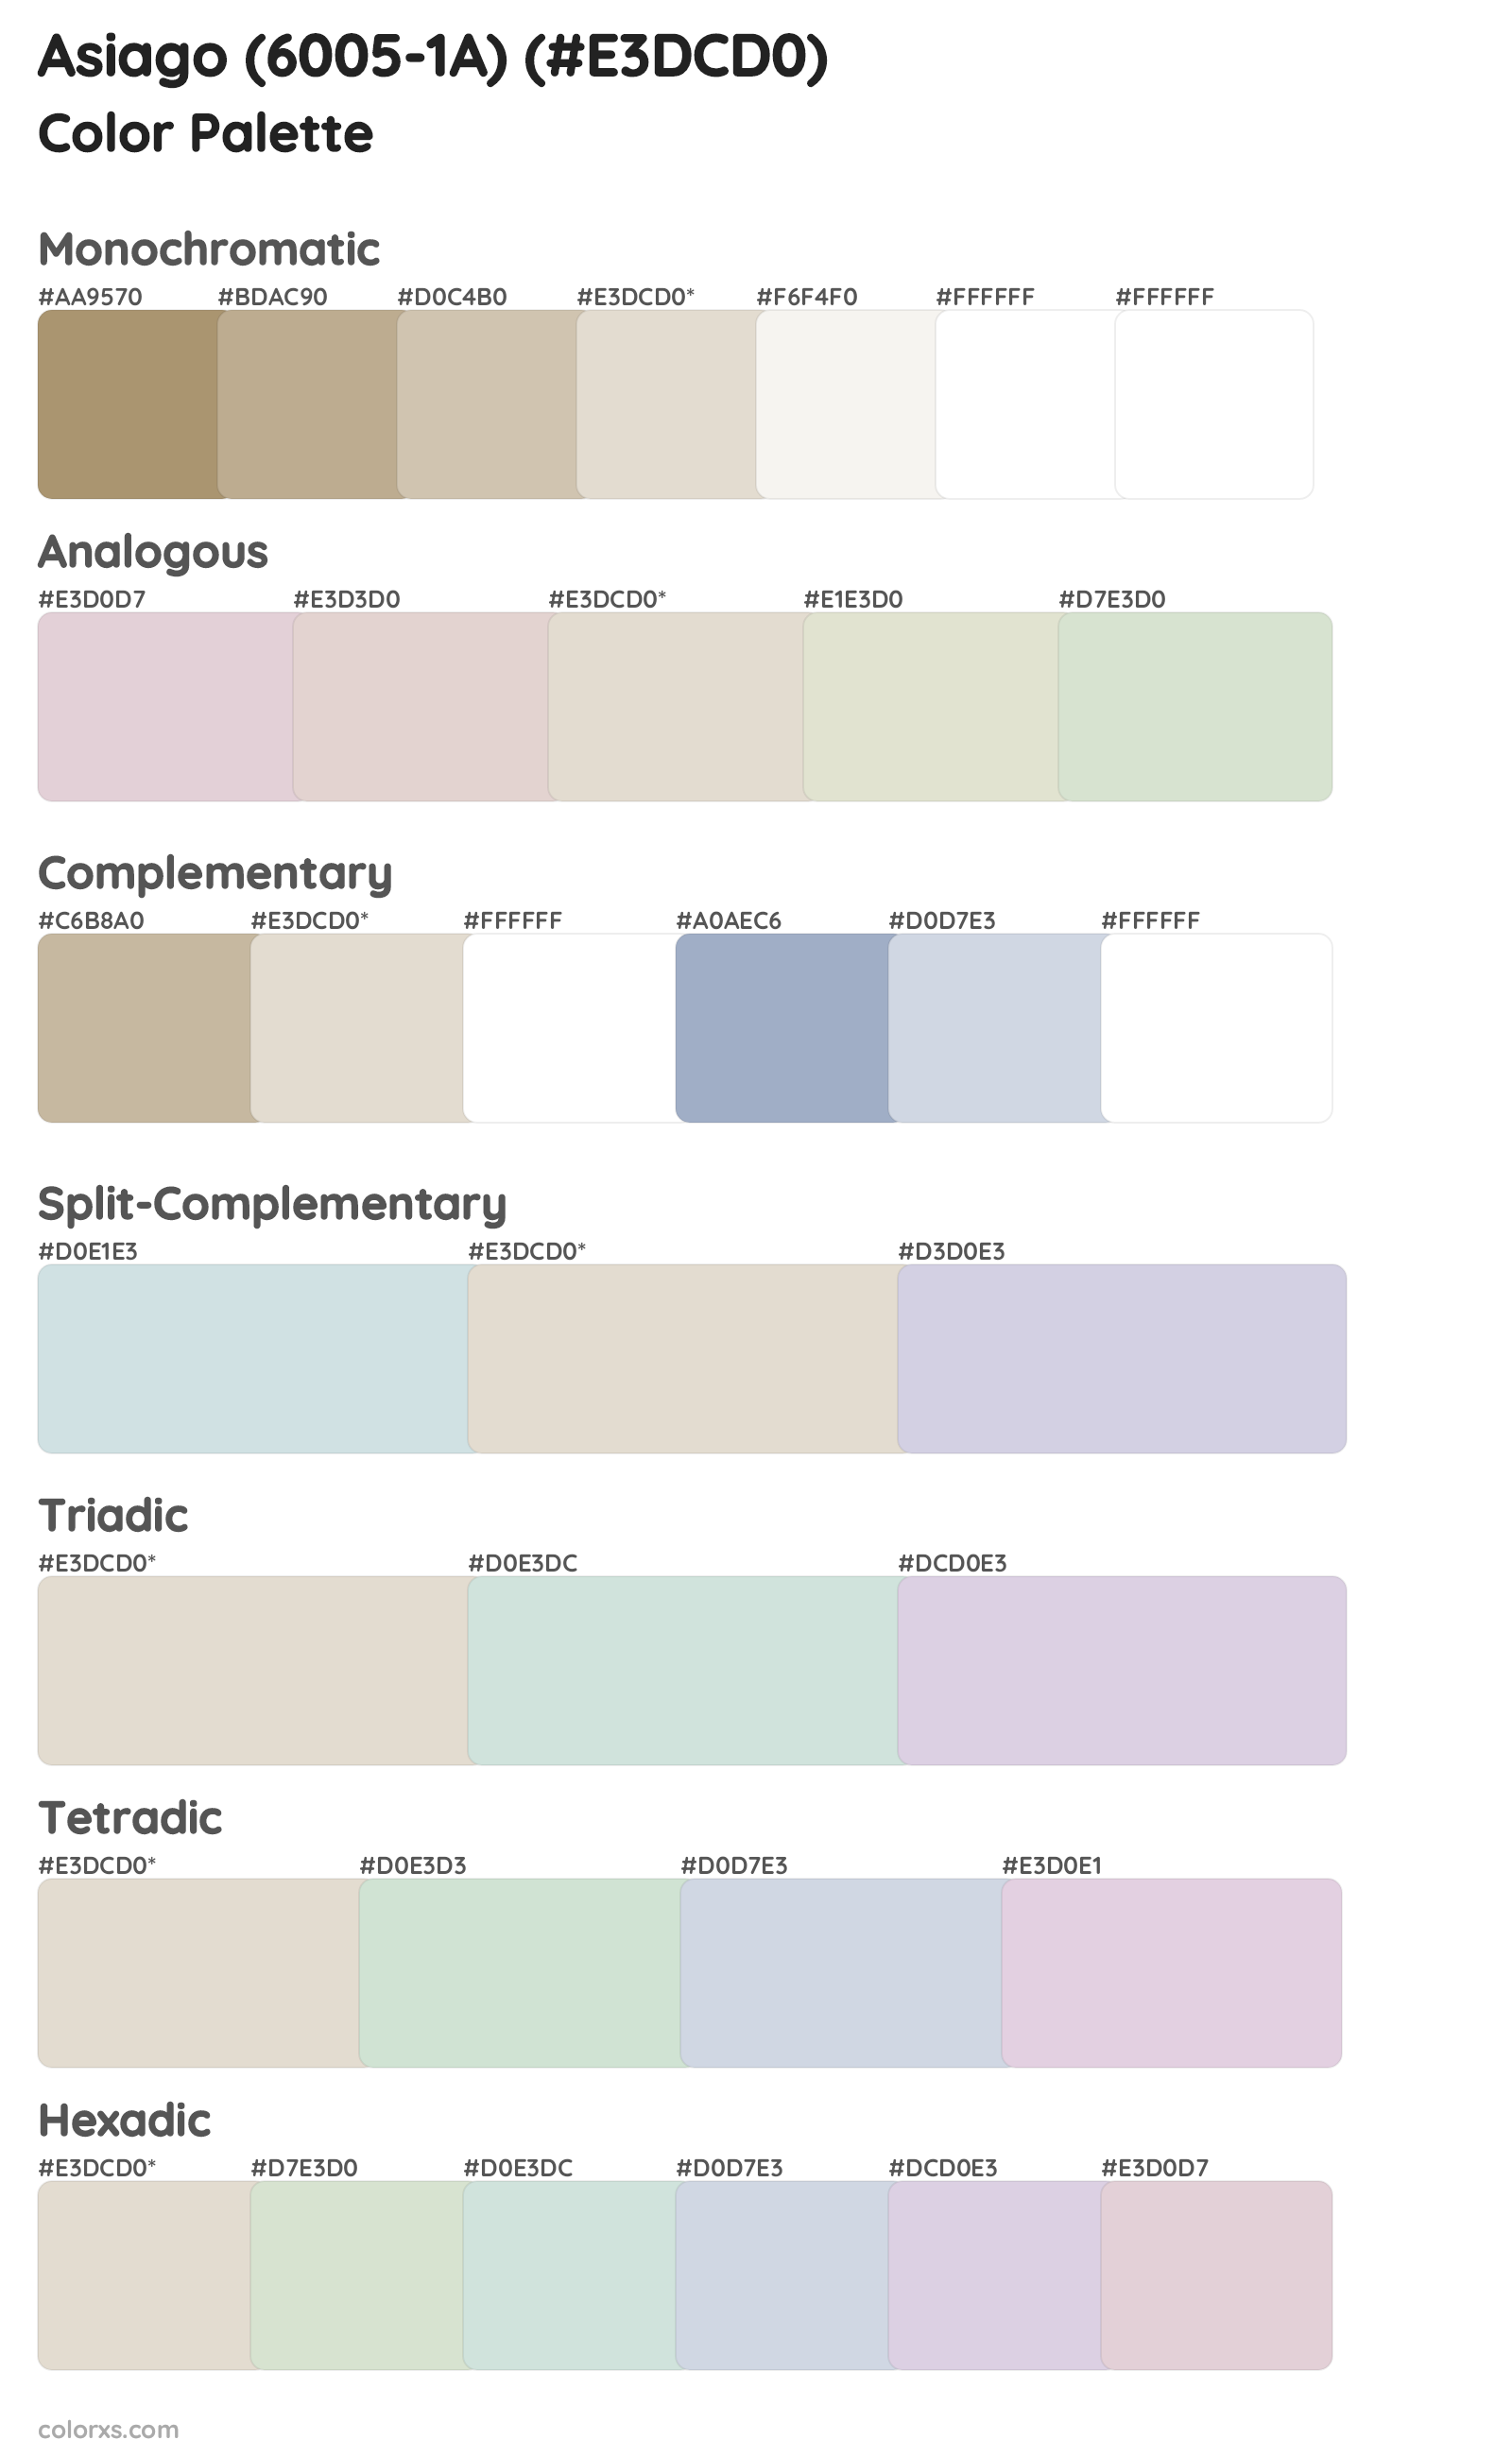 Asiago (6005-1A) Color Scheme Palettes